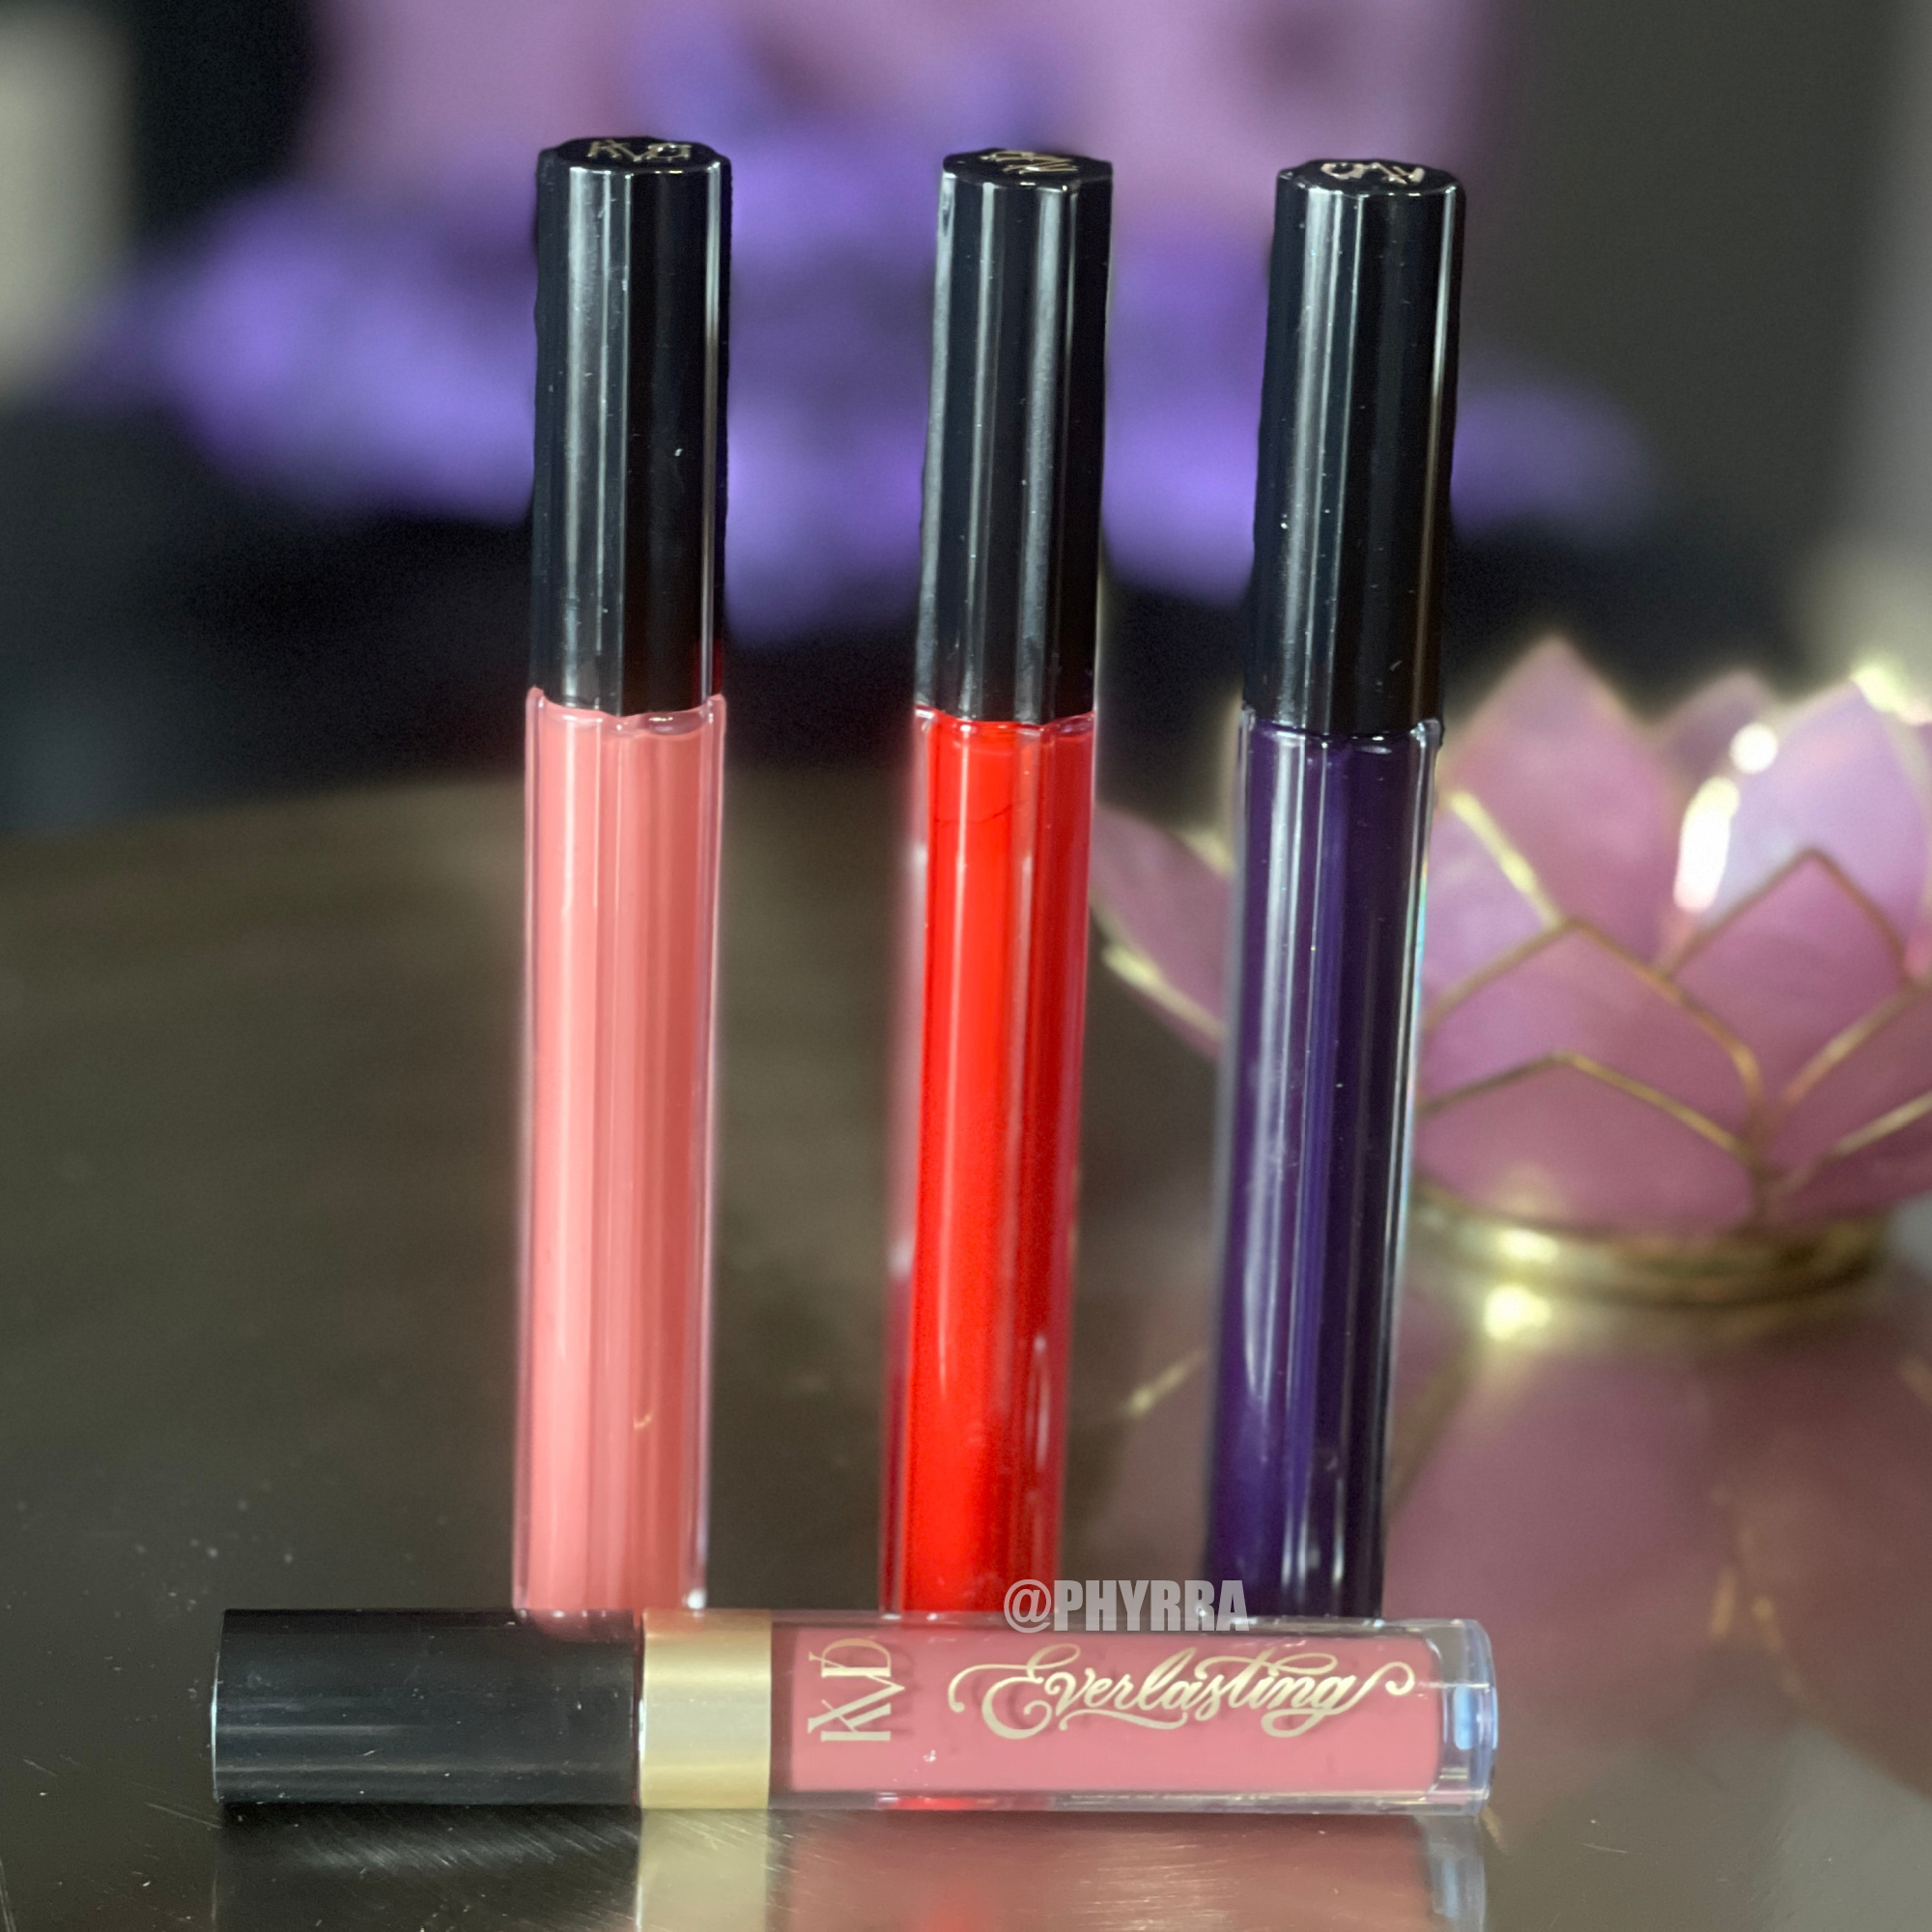 KVD Everlasting Hyperlight Liquid Lipstick Review